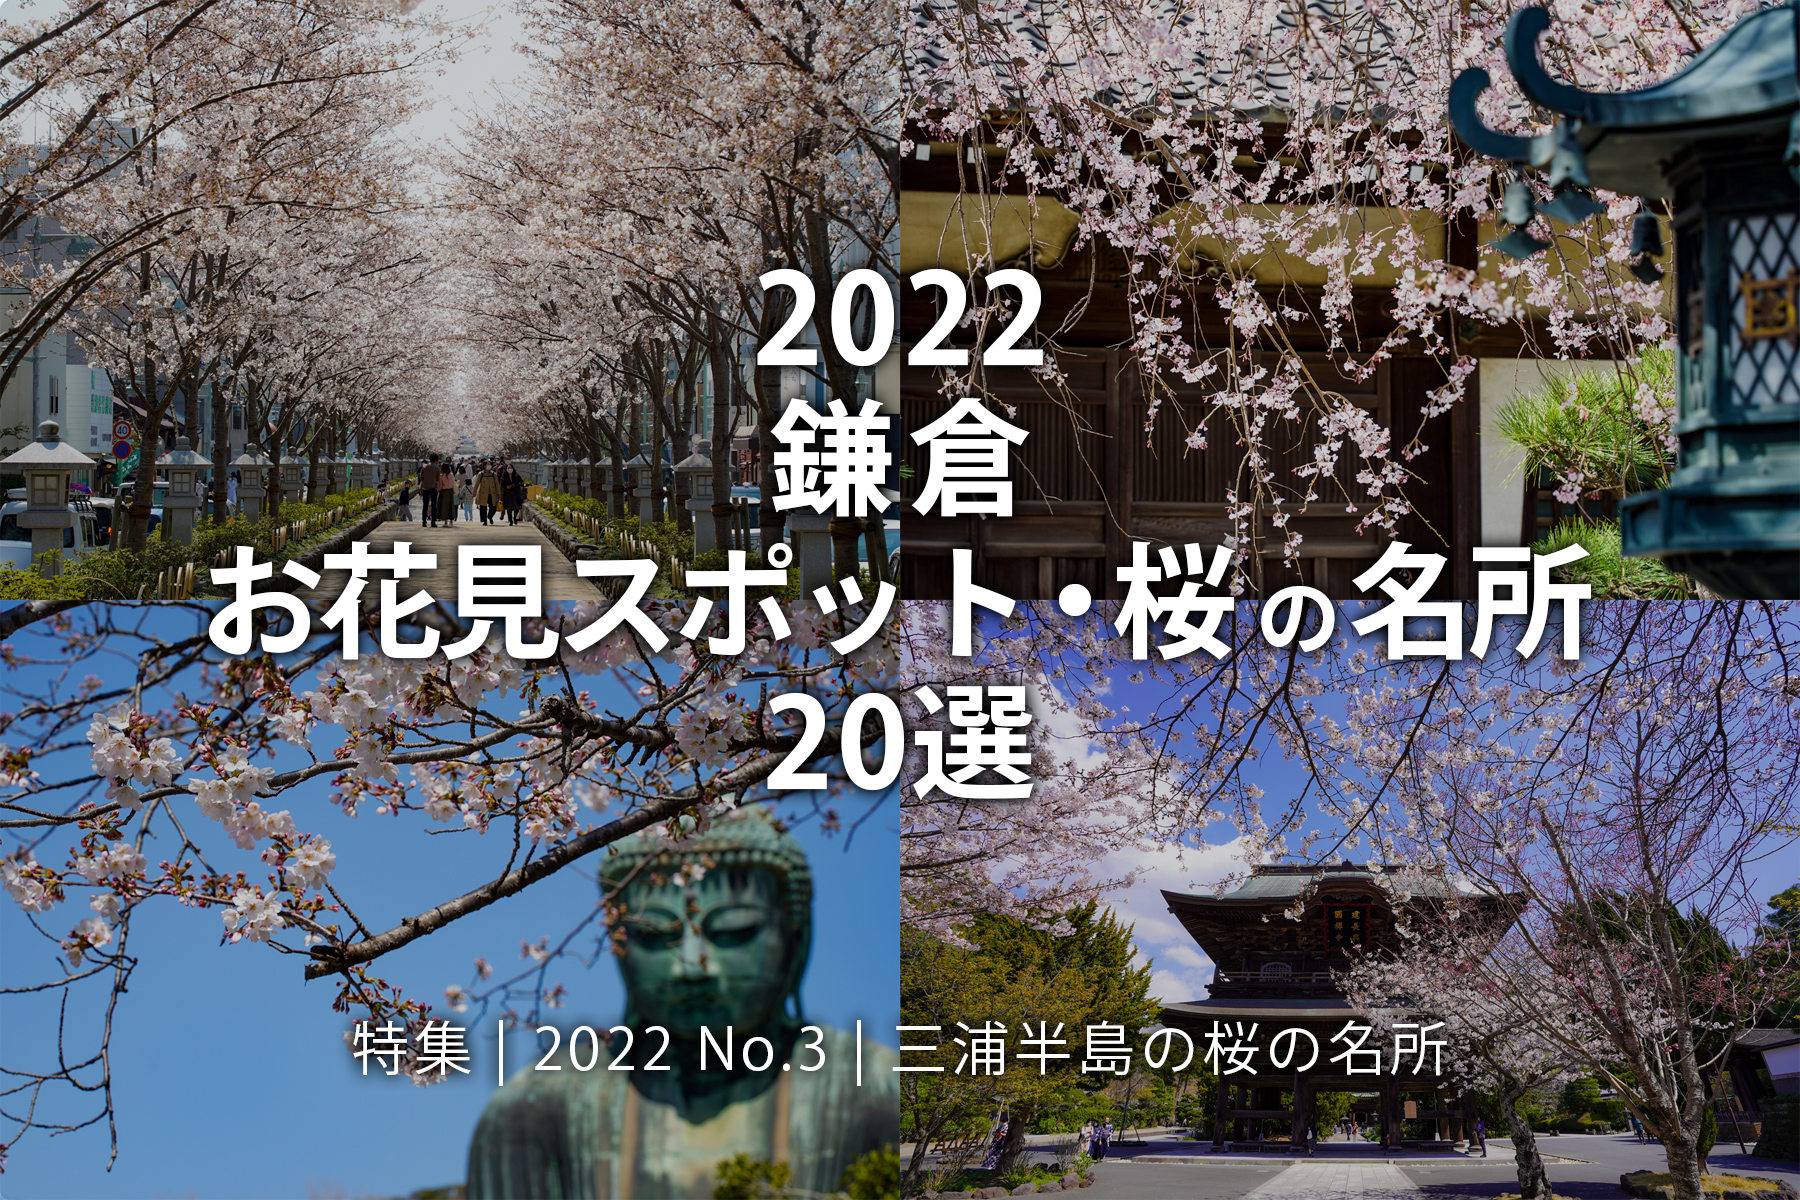 【2022 No.3】特集 | 鎌倉 三浦半島お花見スポット・桜の名所20選